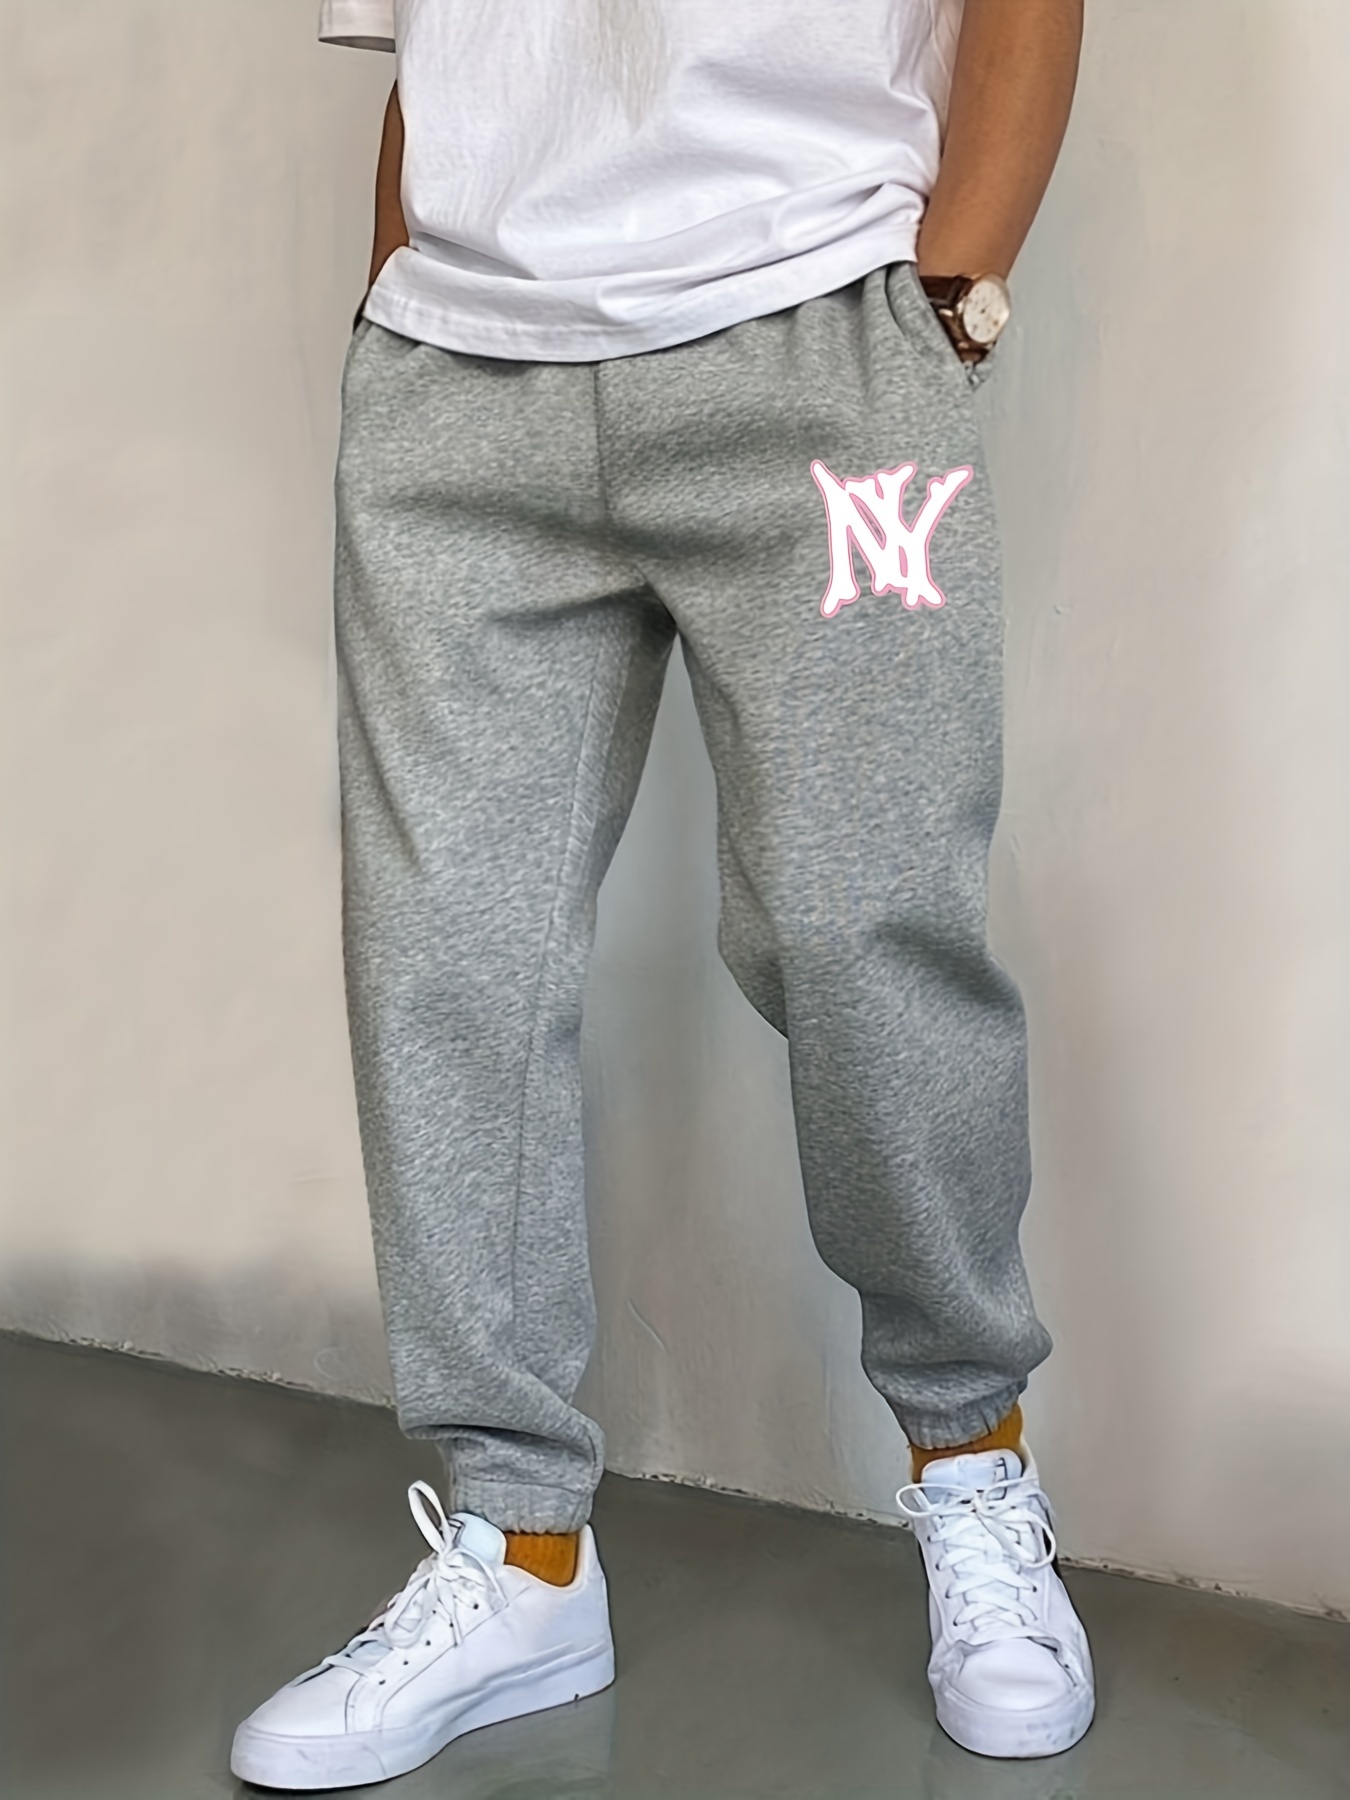  Pantalones deportivos casuales con estampado de letras